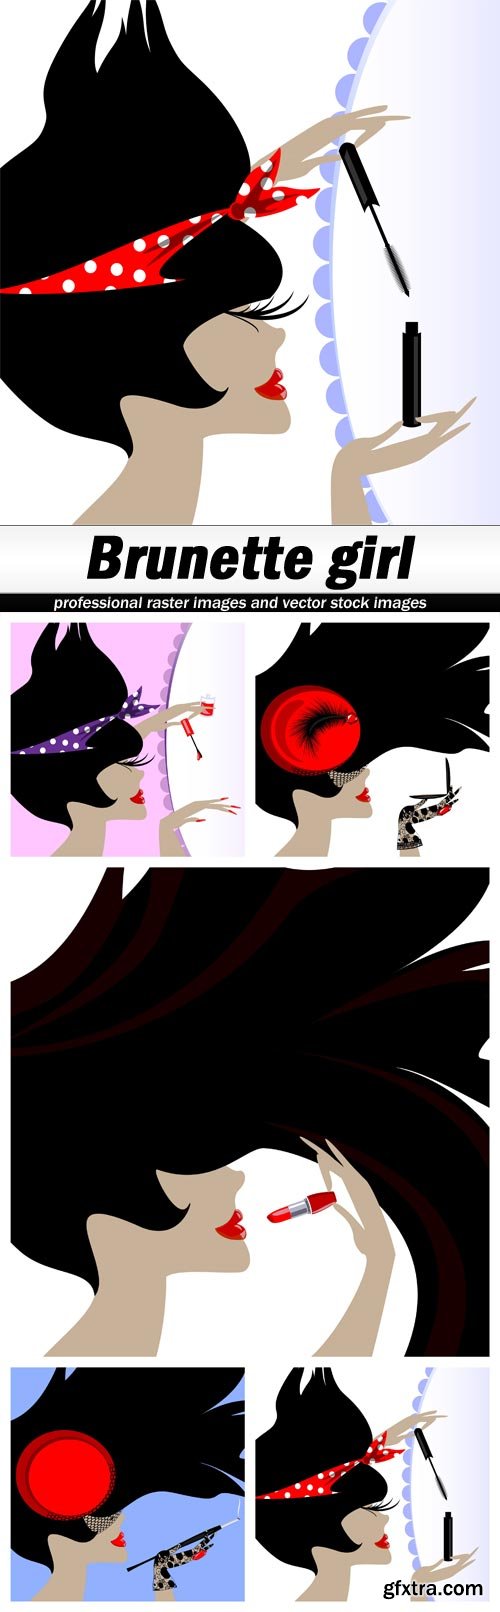 Brunette girl - 5 EPS